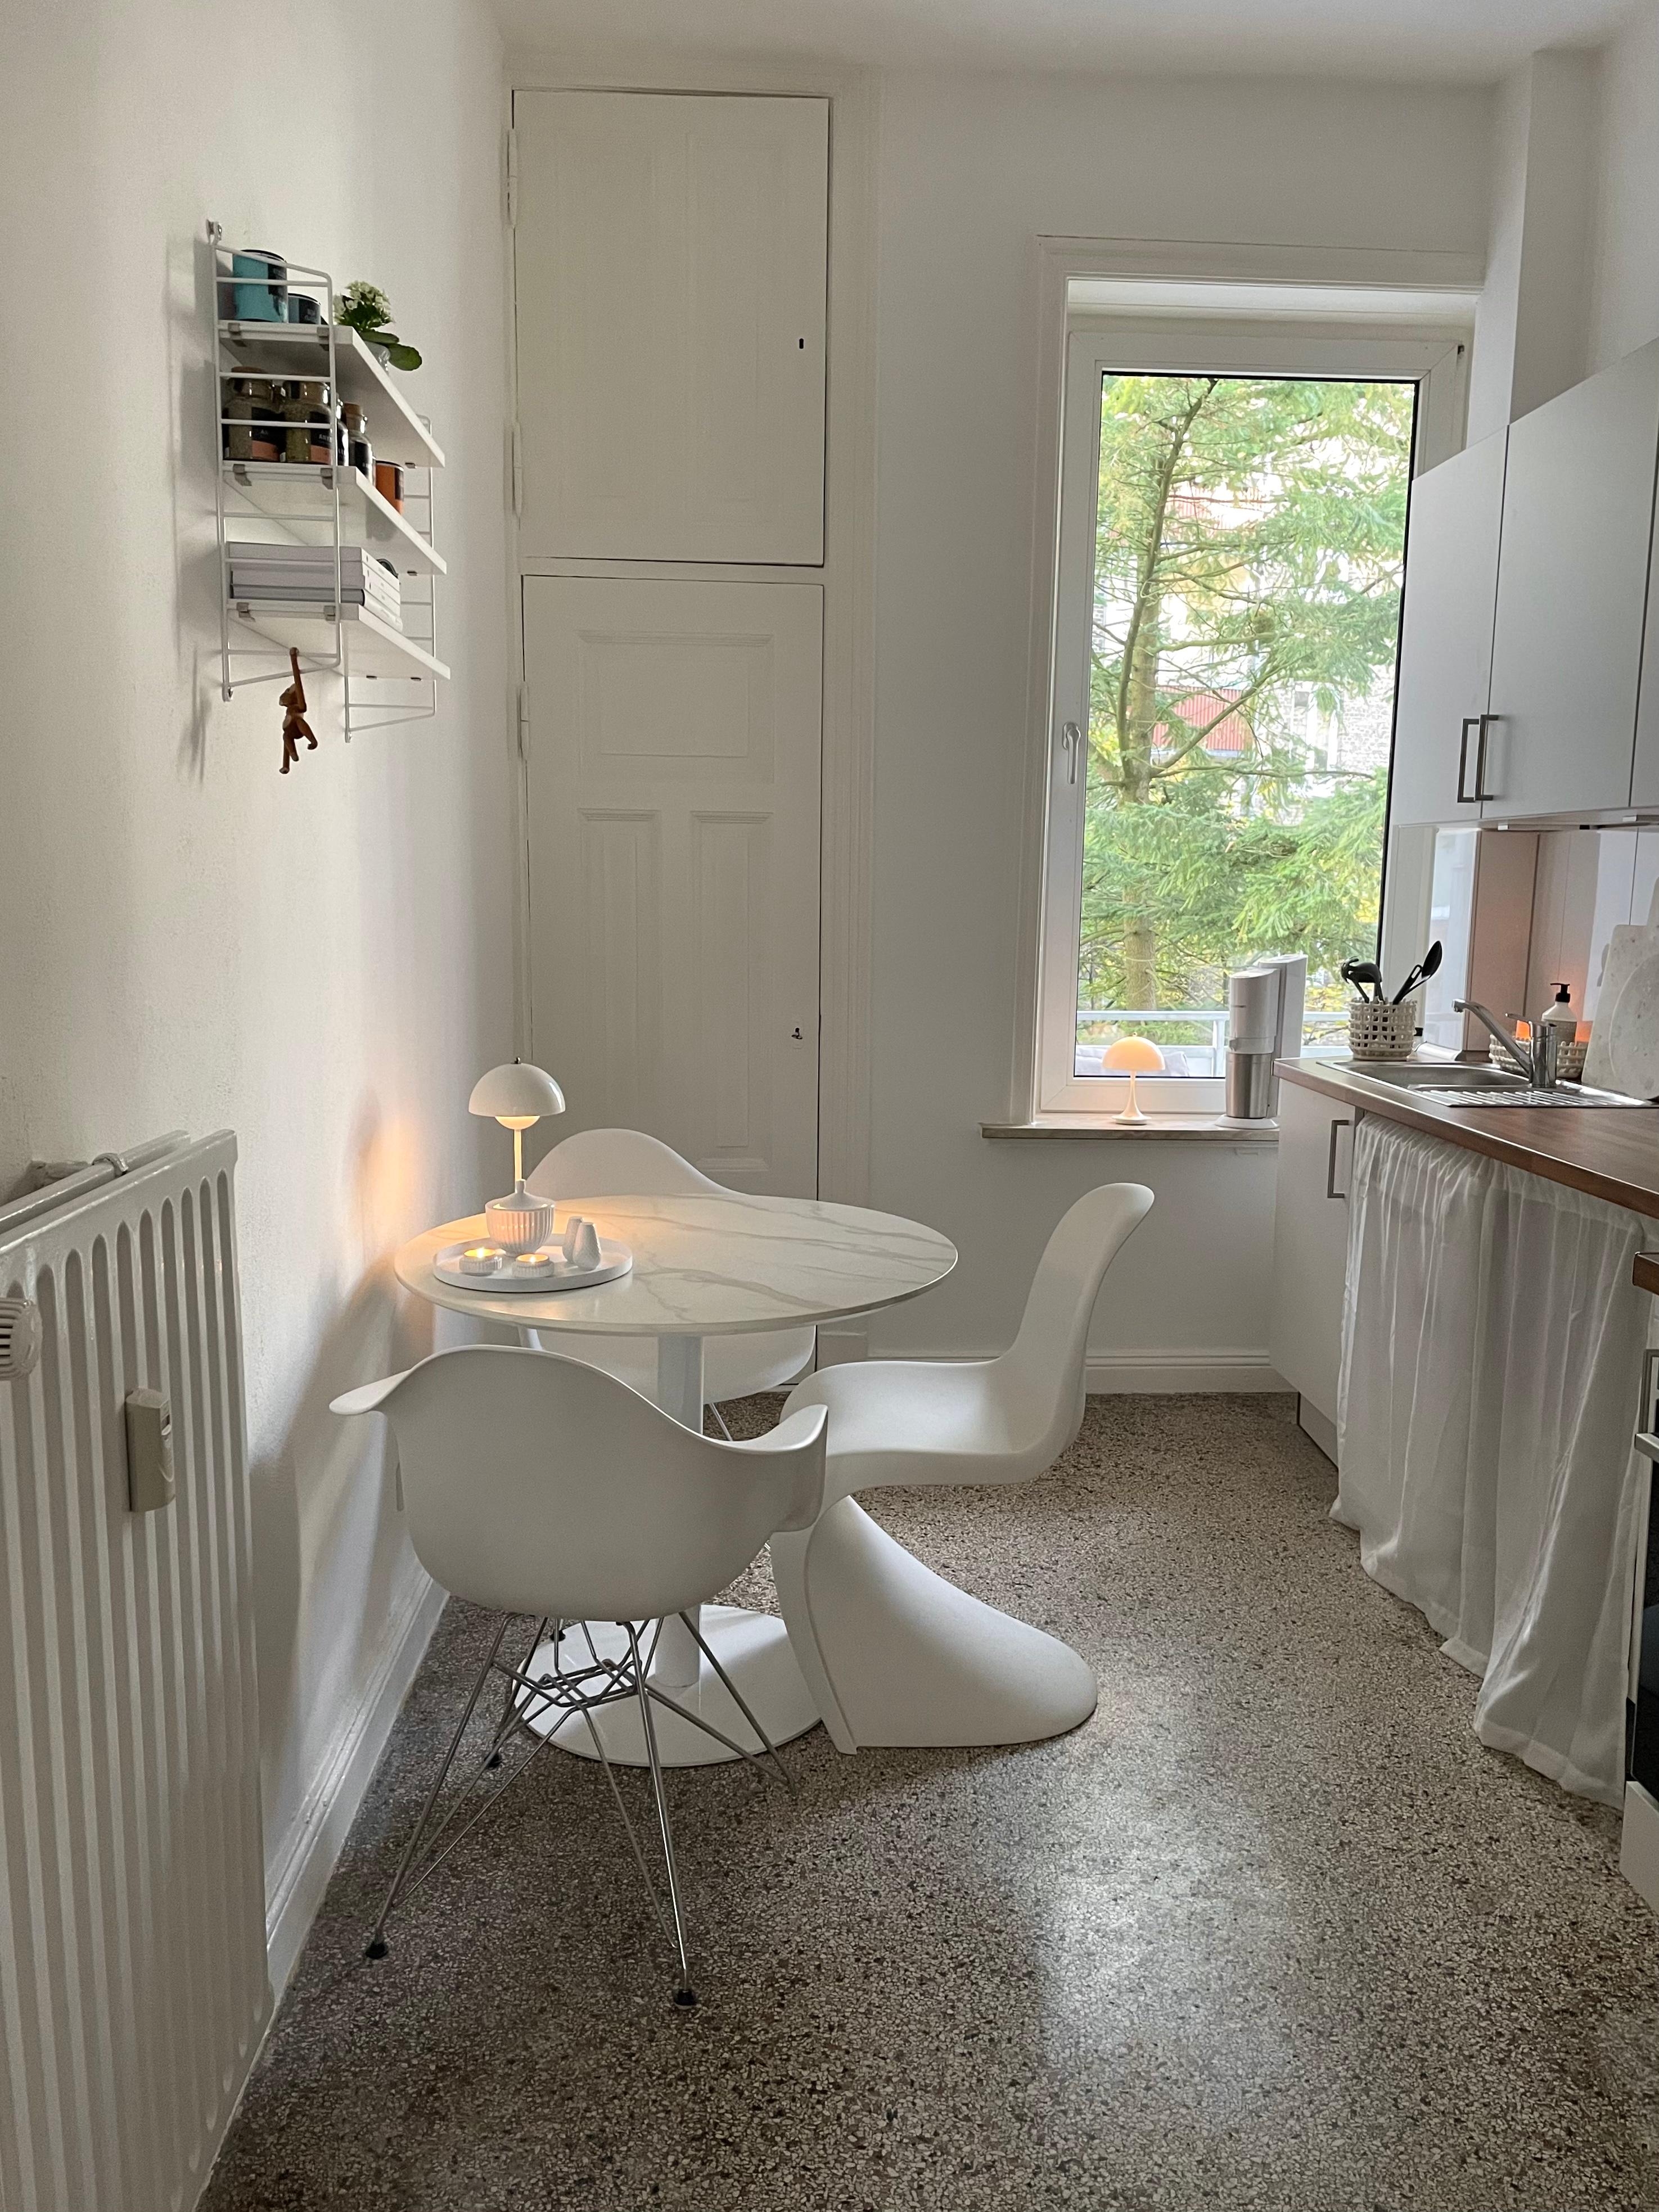 Kücheninspo #küche #küchendesign #weißeküche #skandinavischwohnen #dänischesdesign #neuhier 